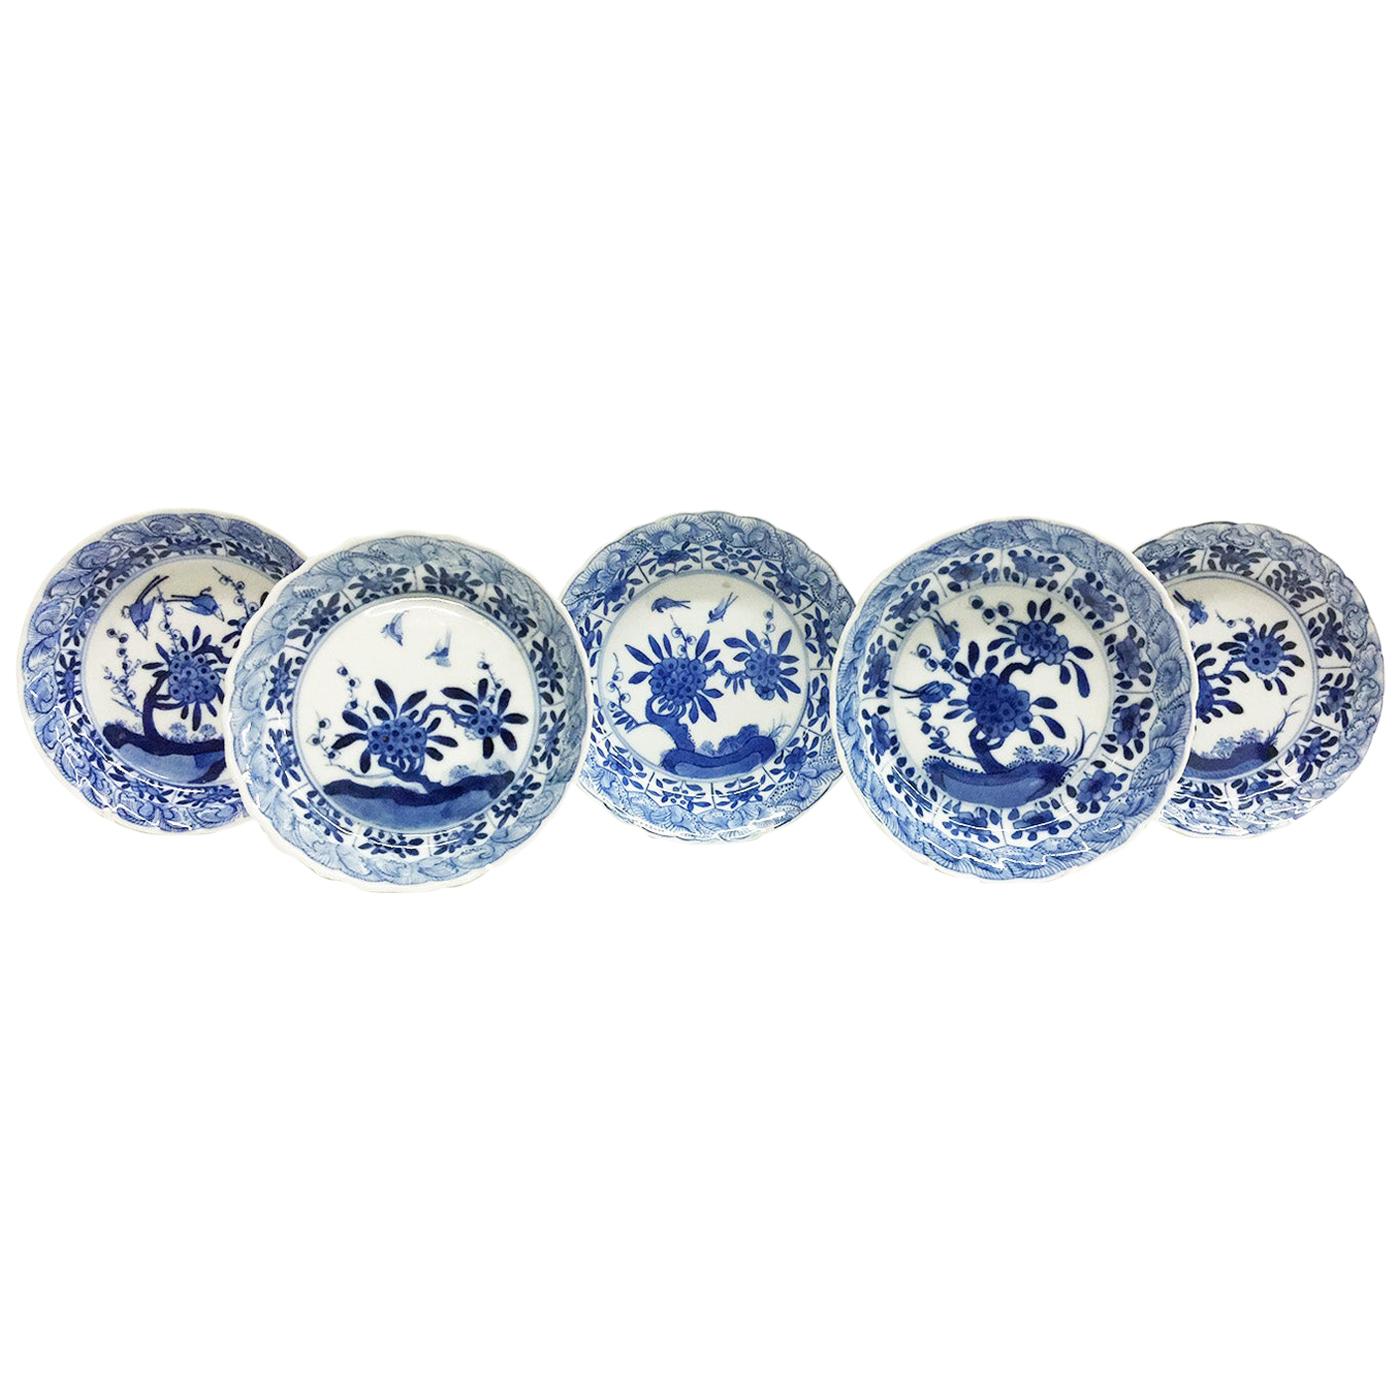 Assiettes en porcelaine ancienne d'exportation chinoise, Kangxi, 1662-1722